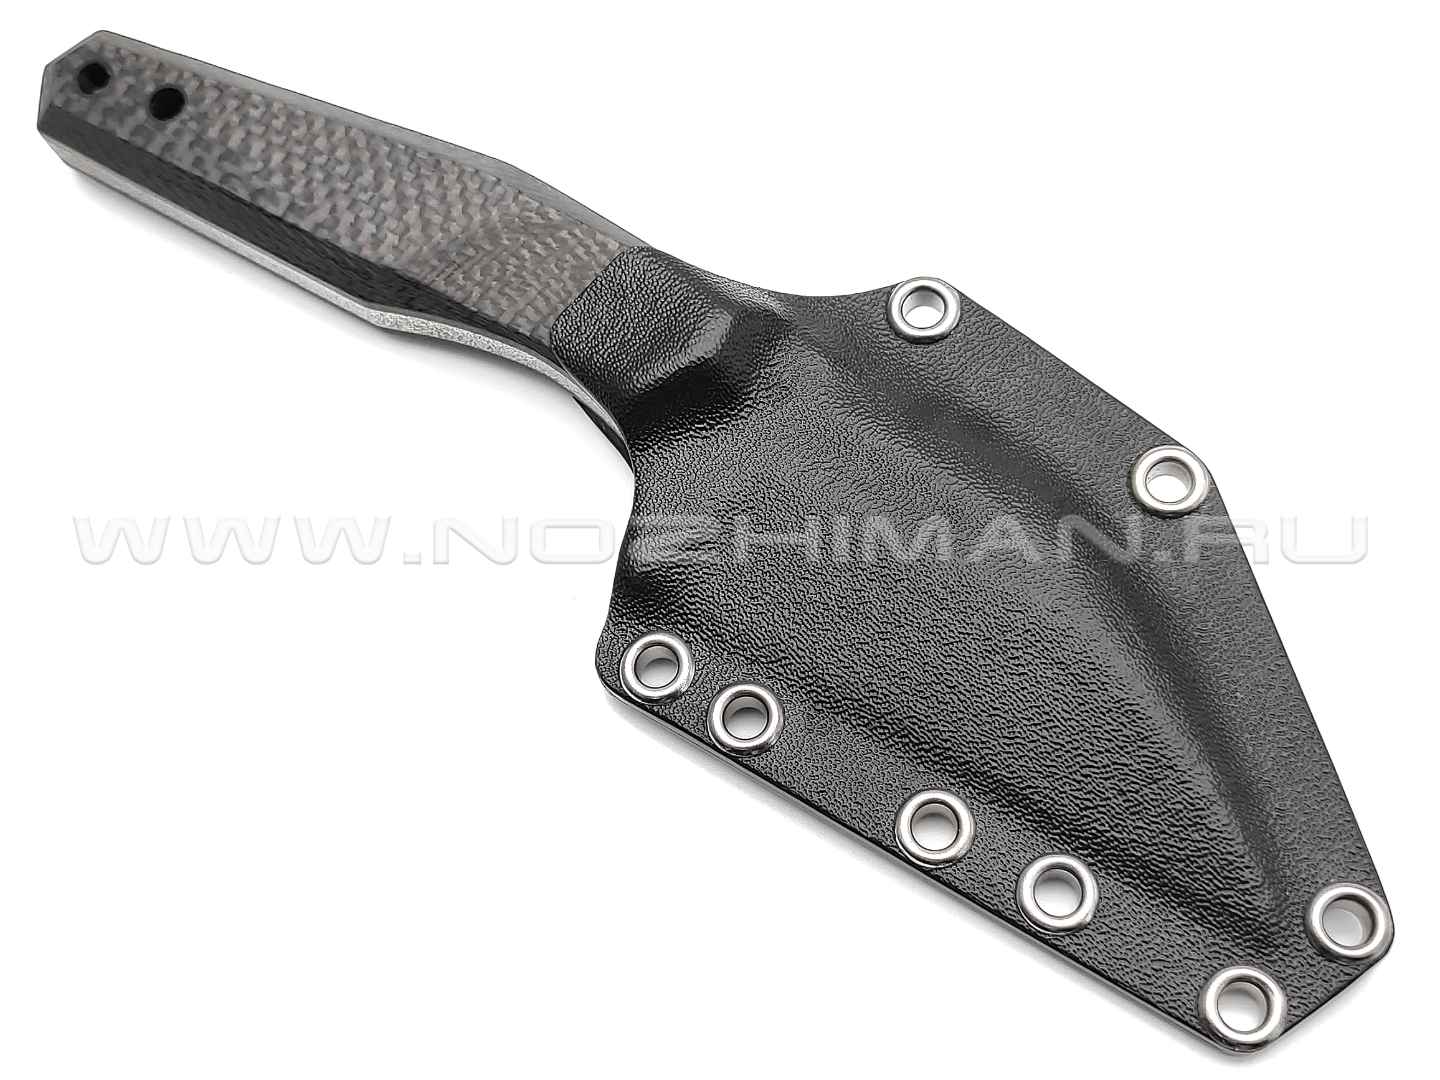 Волчий Век нож Wharn Custom сталь PGK WA, рукоять Carbon fiber